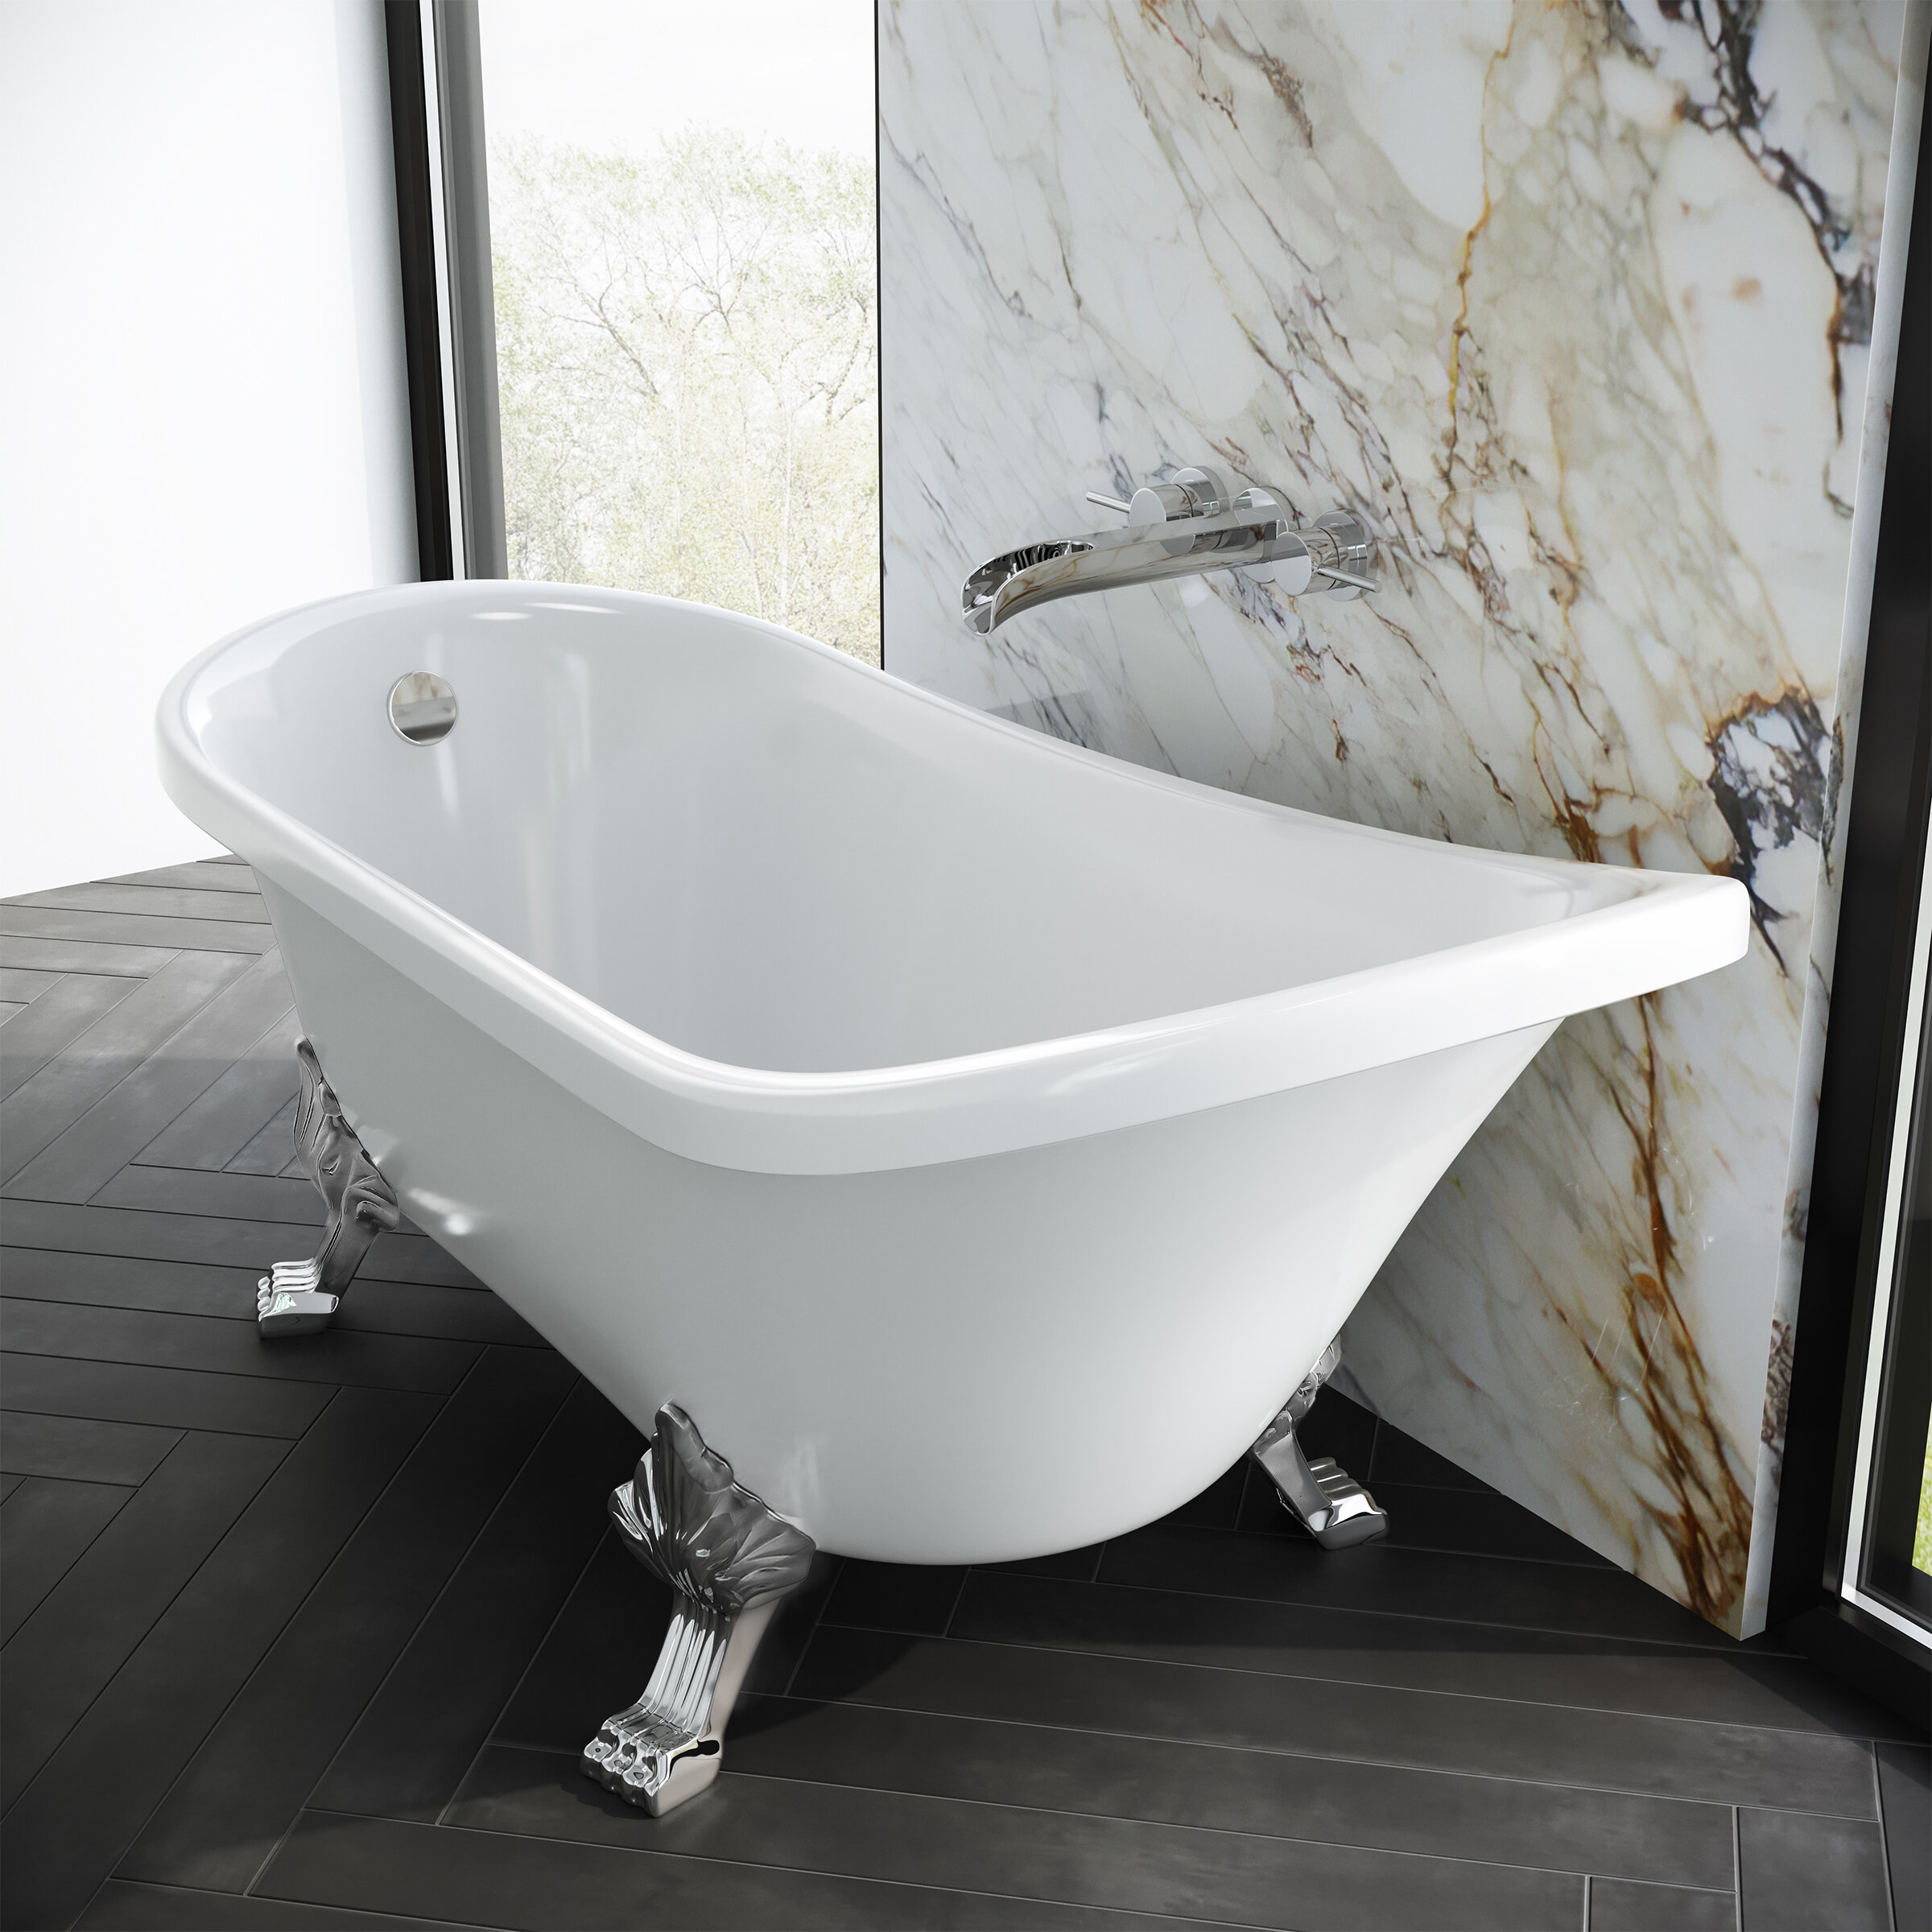 Deep soaker bathtub vs. classic style bathtub - which to choose? - Retro  Renovation